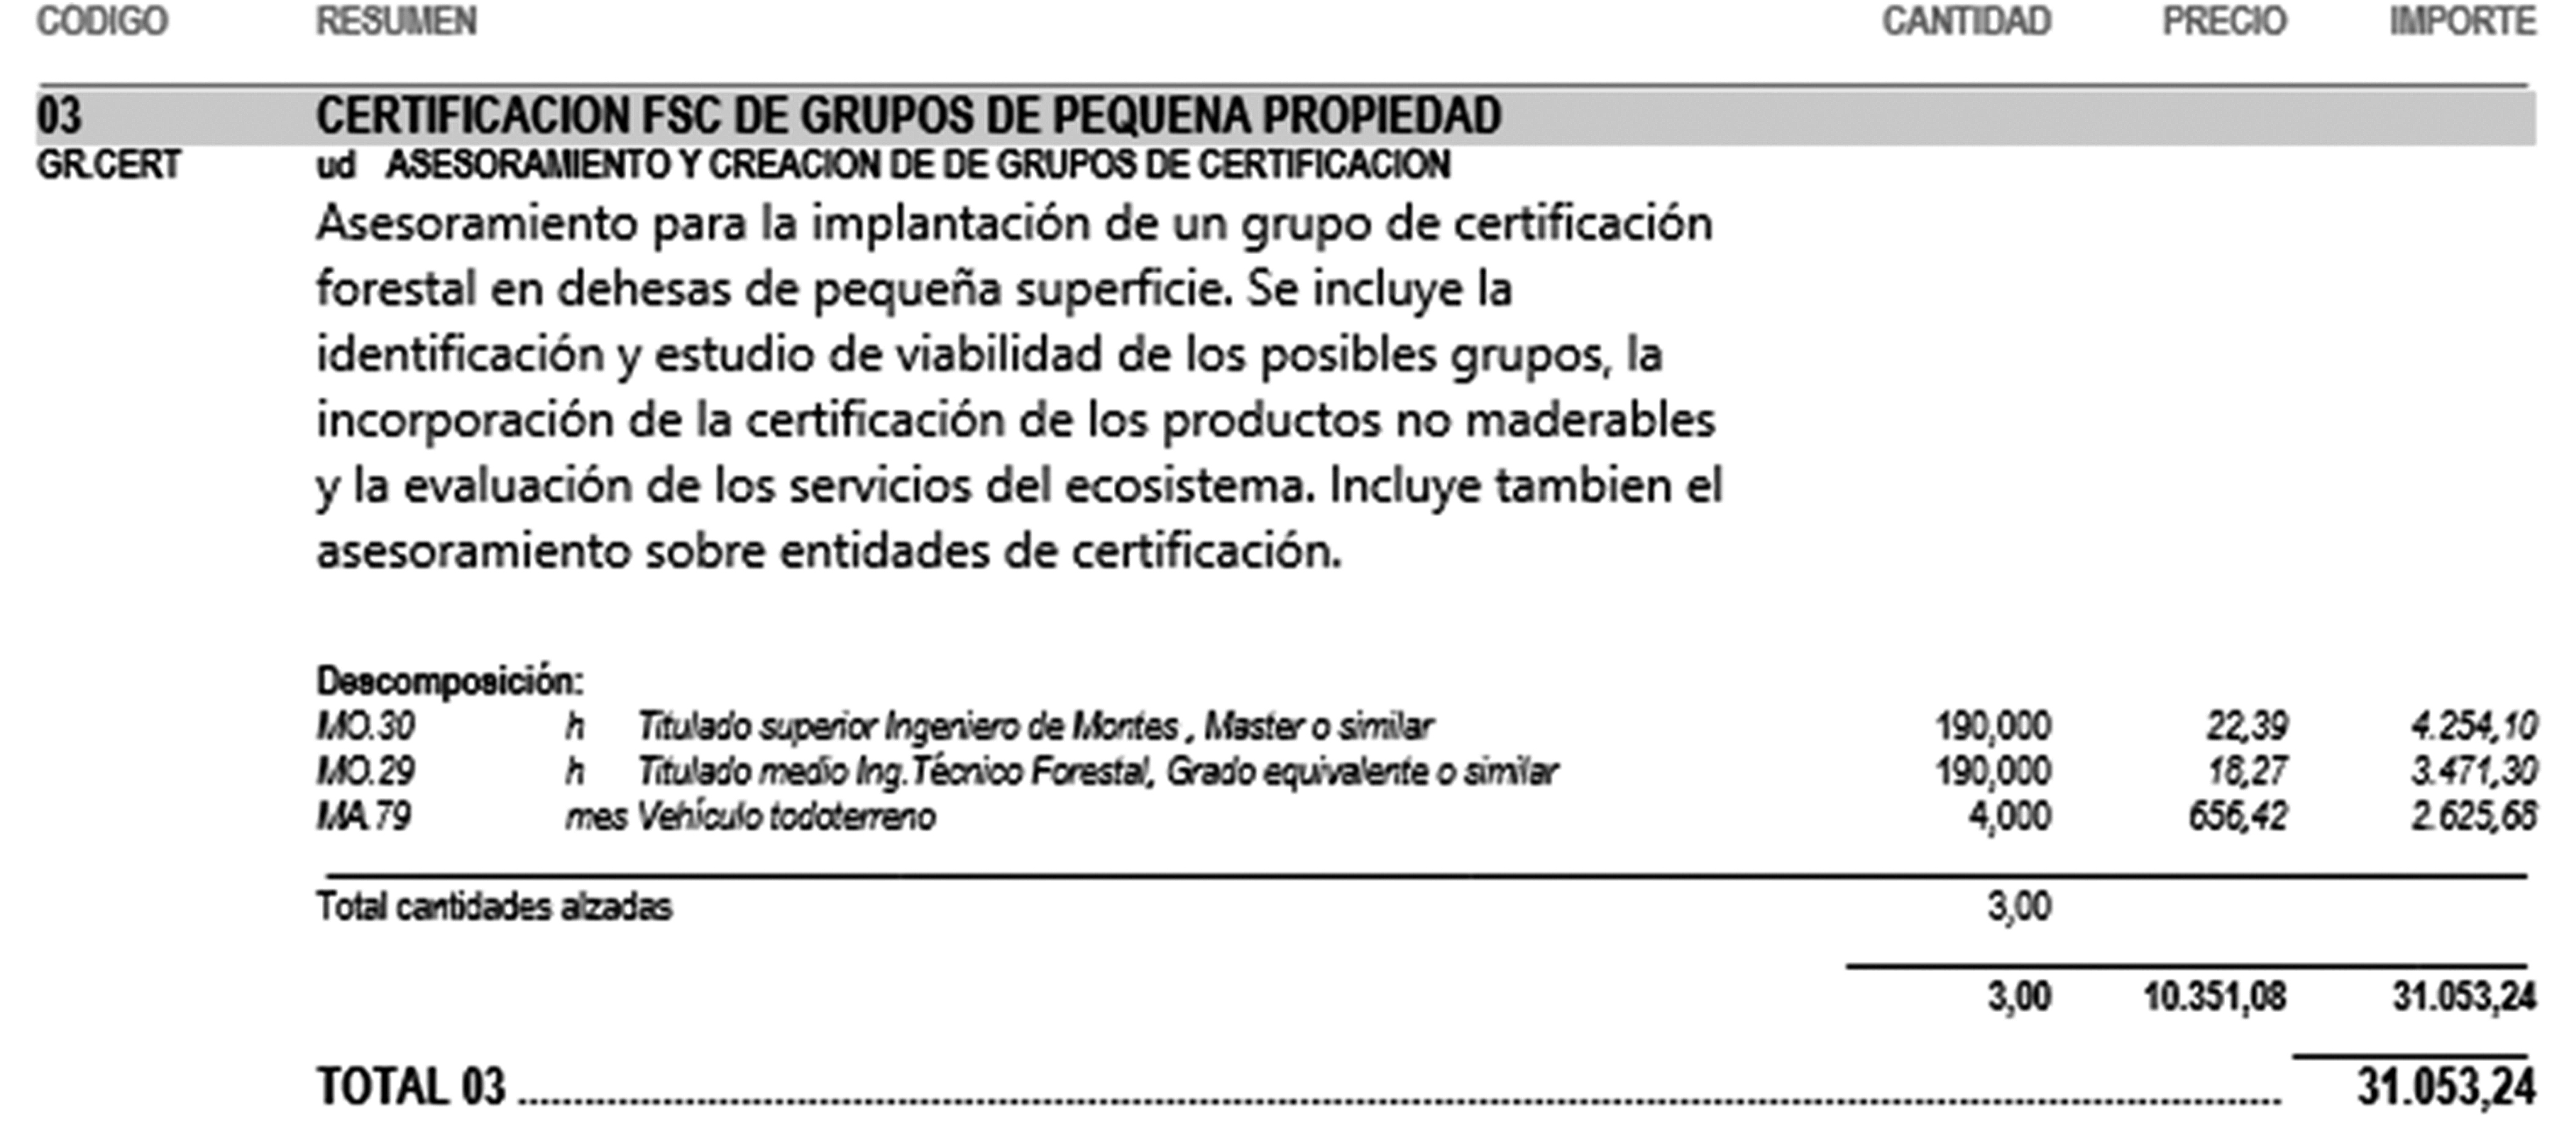 CERTIFICACION FSC DE GRUPOS DE PEQUEÑA PROPIEDAD